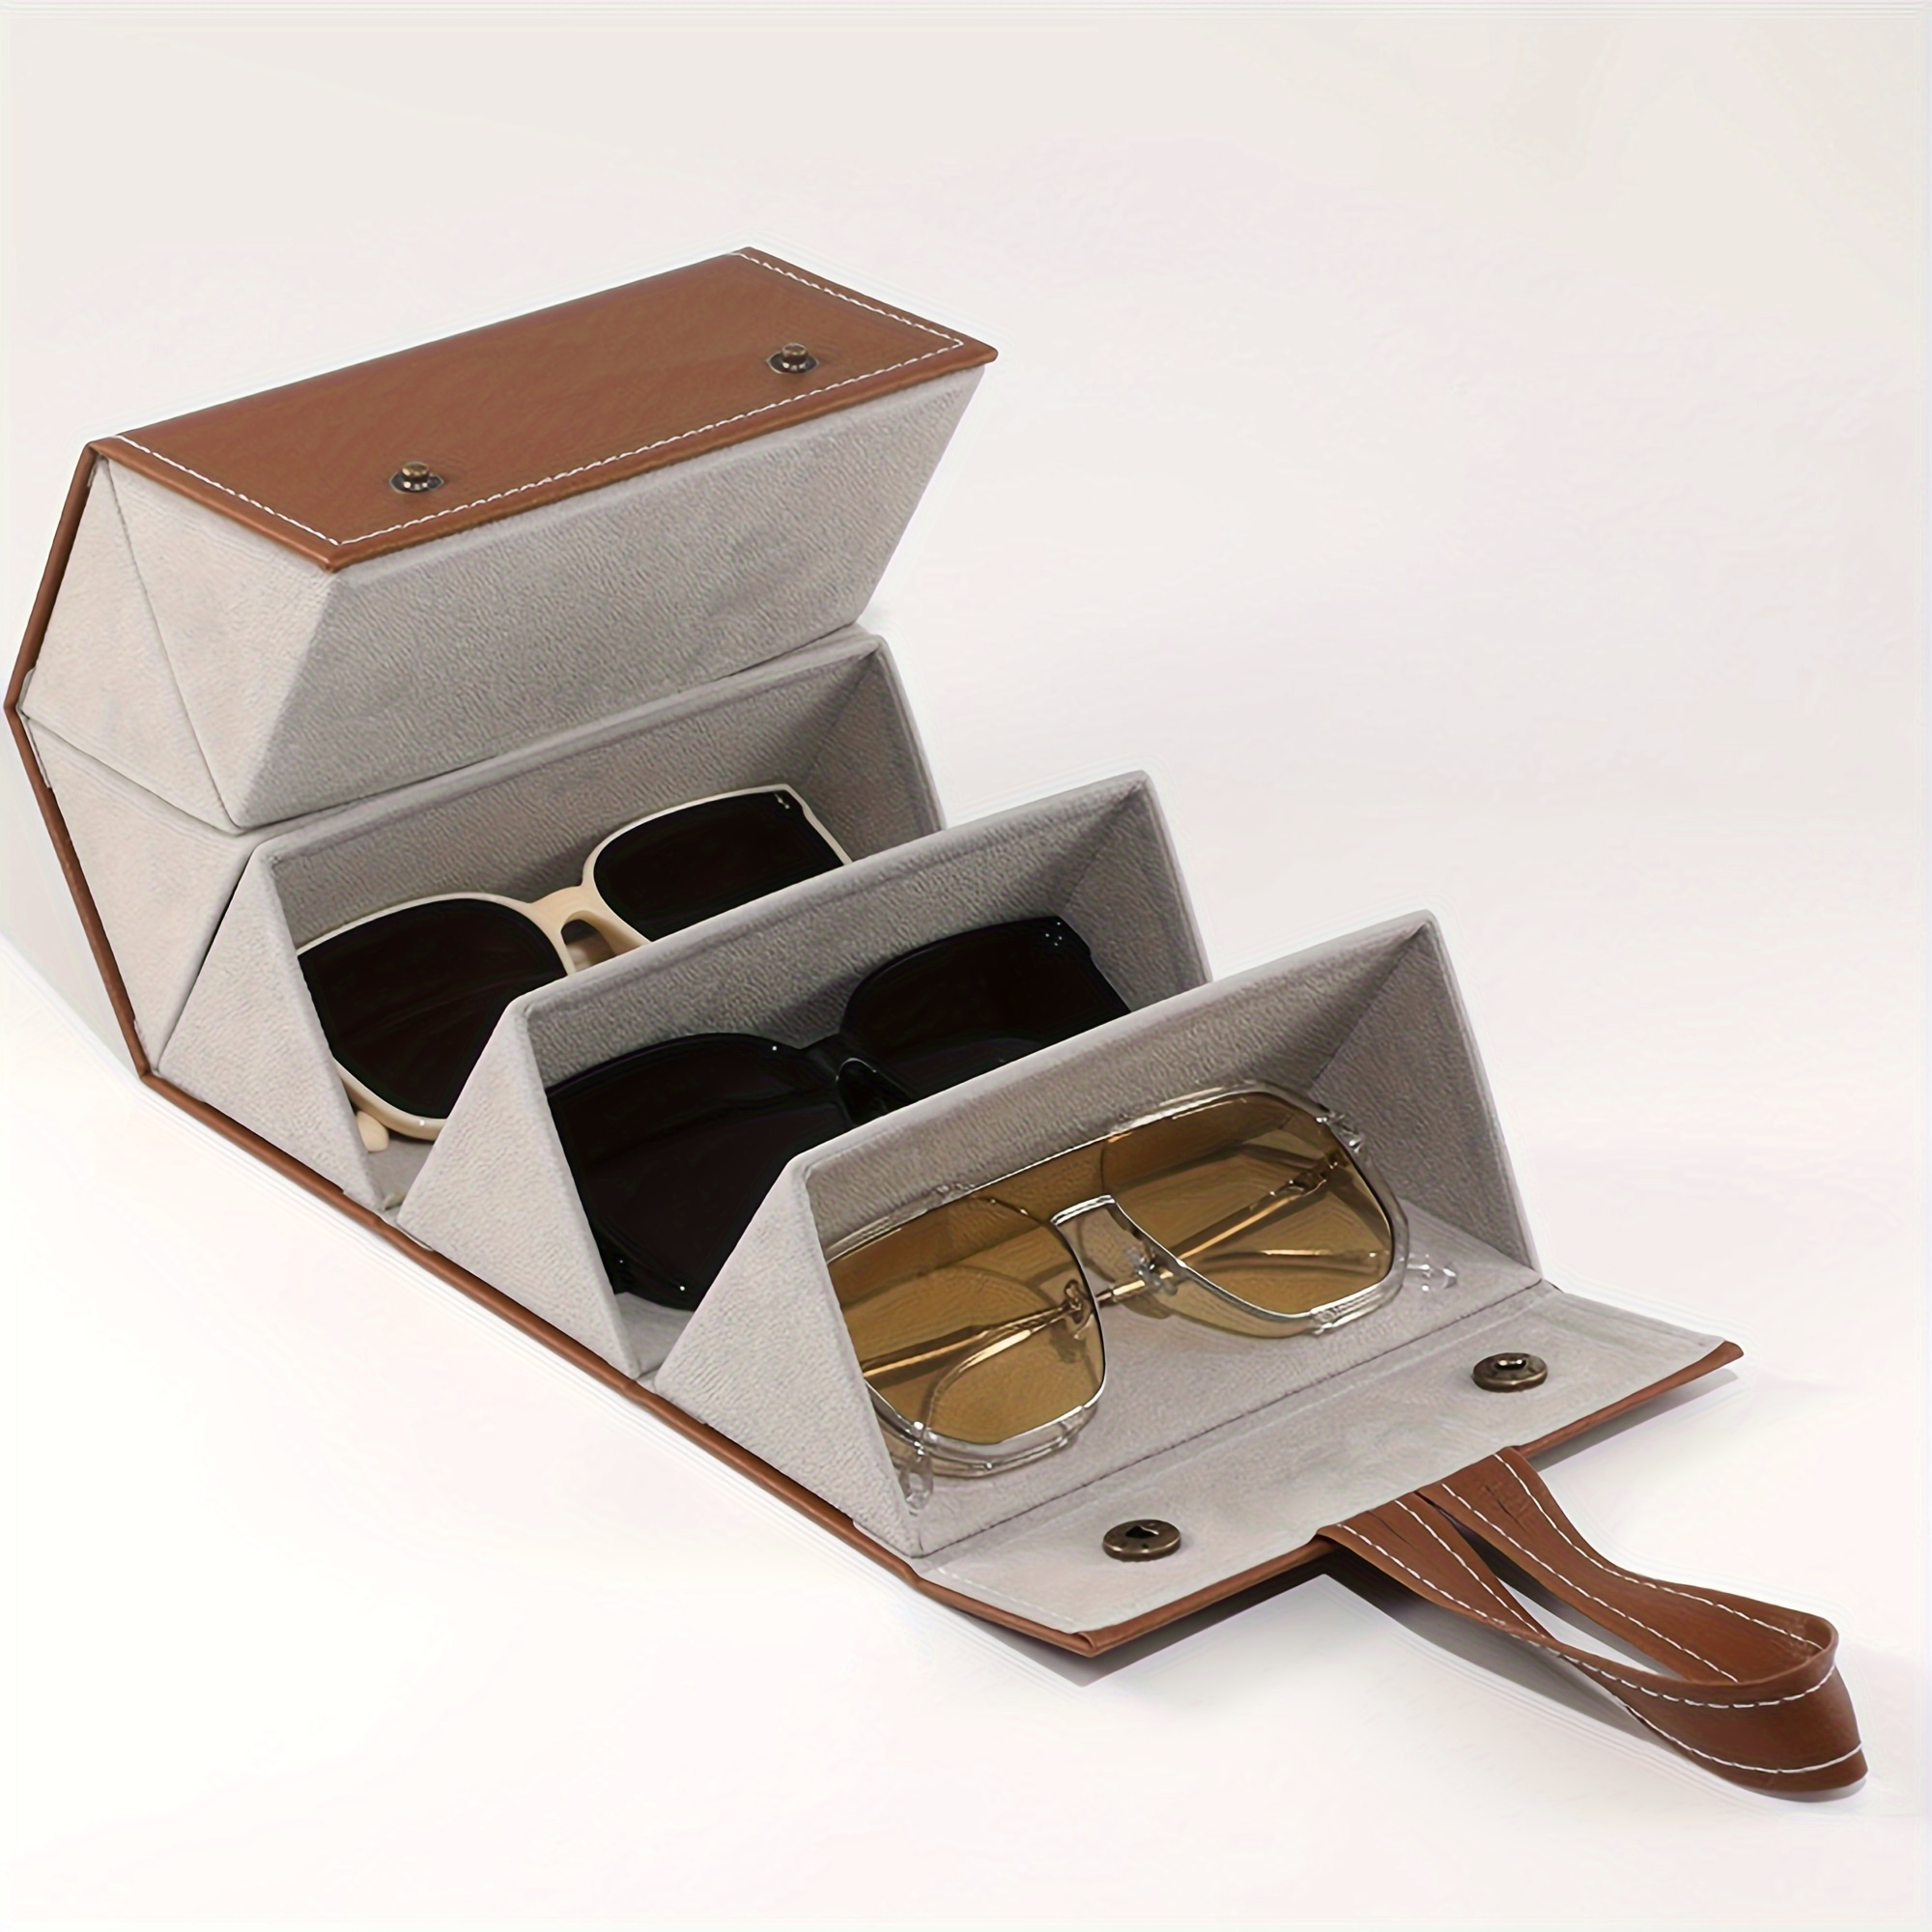 

Un étui pliable pour ranger des lunettes - Organisateur de voyage pour plusieurs paires de lunettes - Support pour lunettes avec 3/4/5/6 emplacements et présentoir suspendu